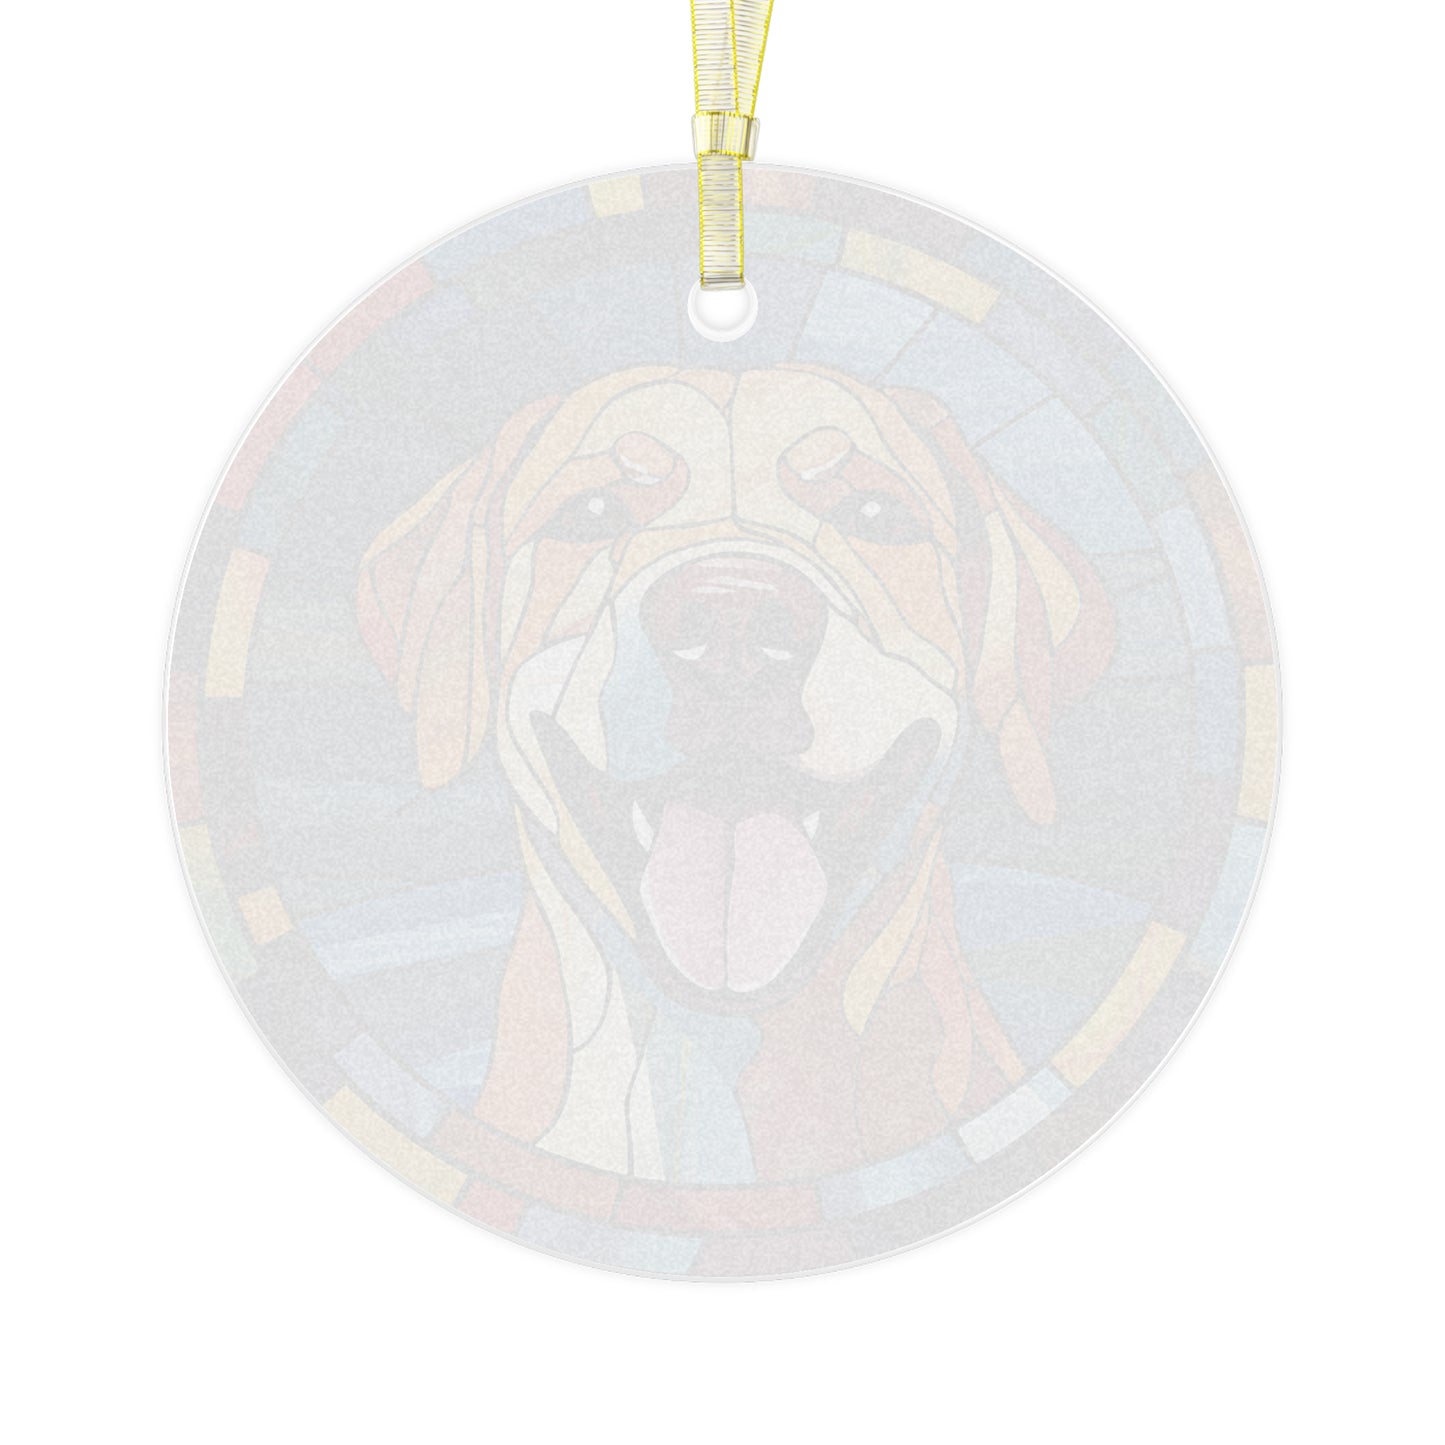 Yellow Labrador Retriever Glass Ornament, Style A